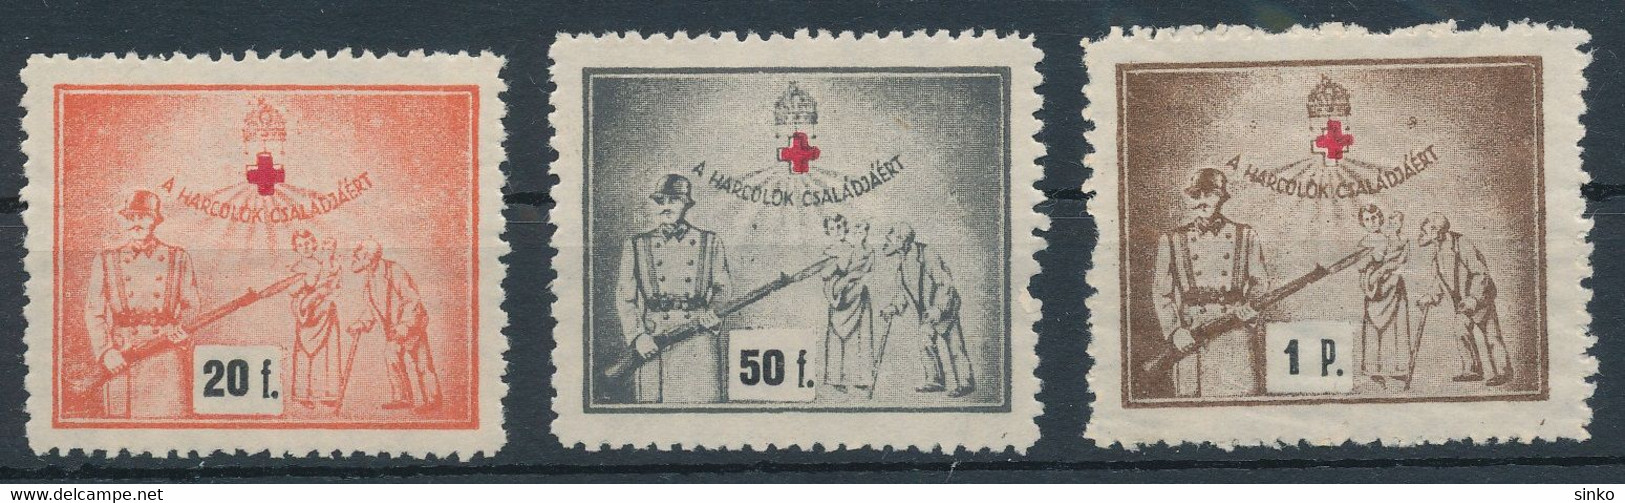 1940s Aid Stamps - Souvenirbögen